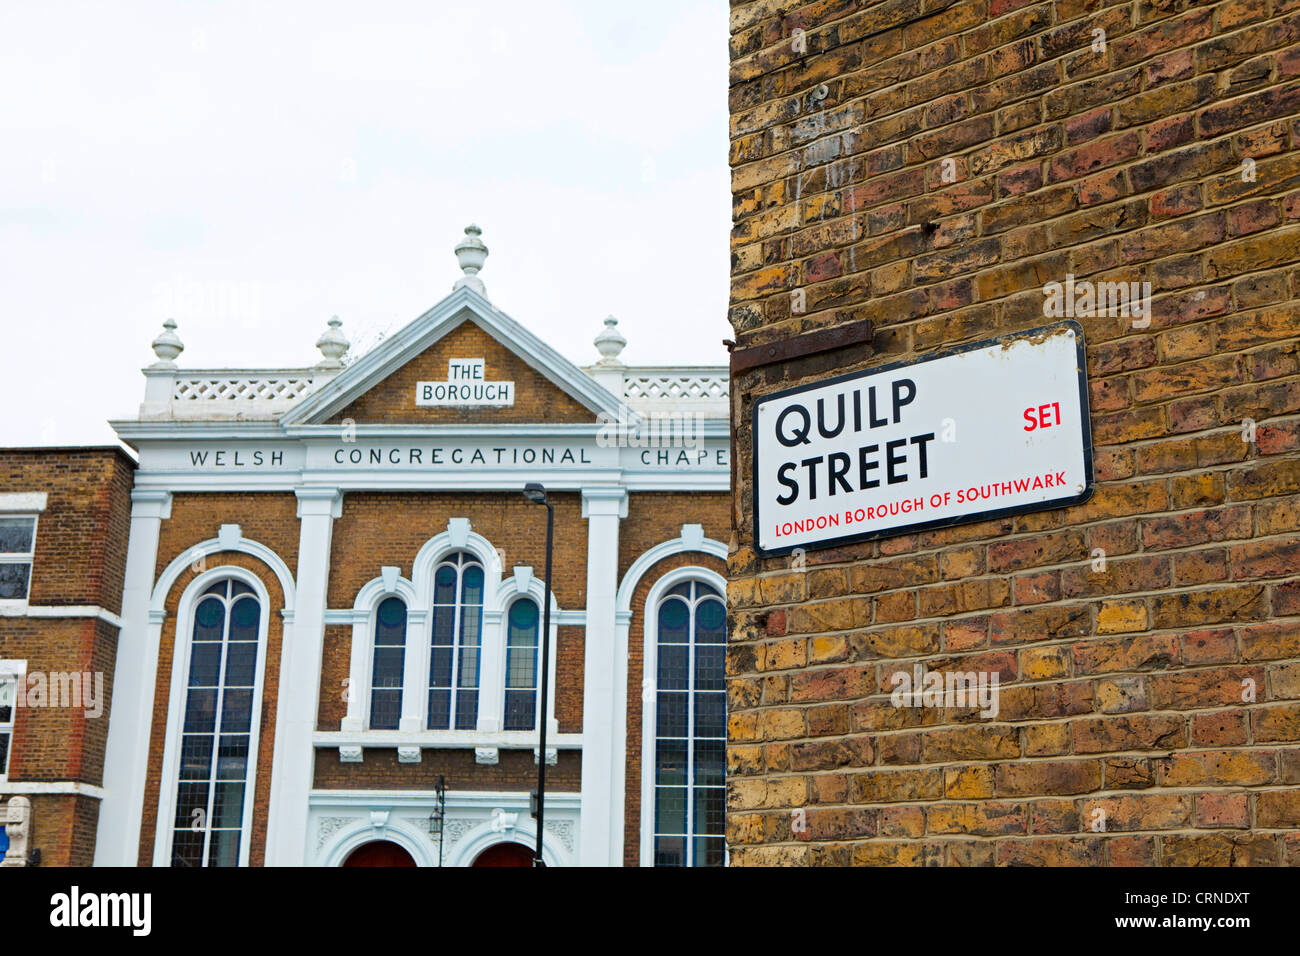 Quilp Street SE1 signe de route en face de la chapelle congrégationaliste gallois des capacités dans le London Borough of Southwark. Banque D'Images